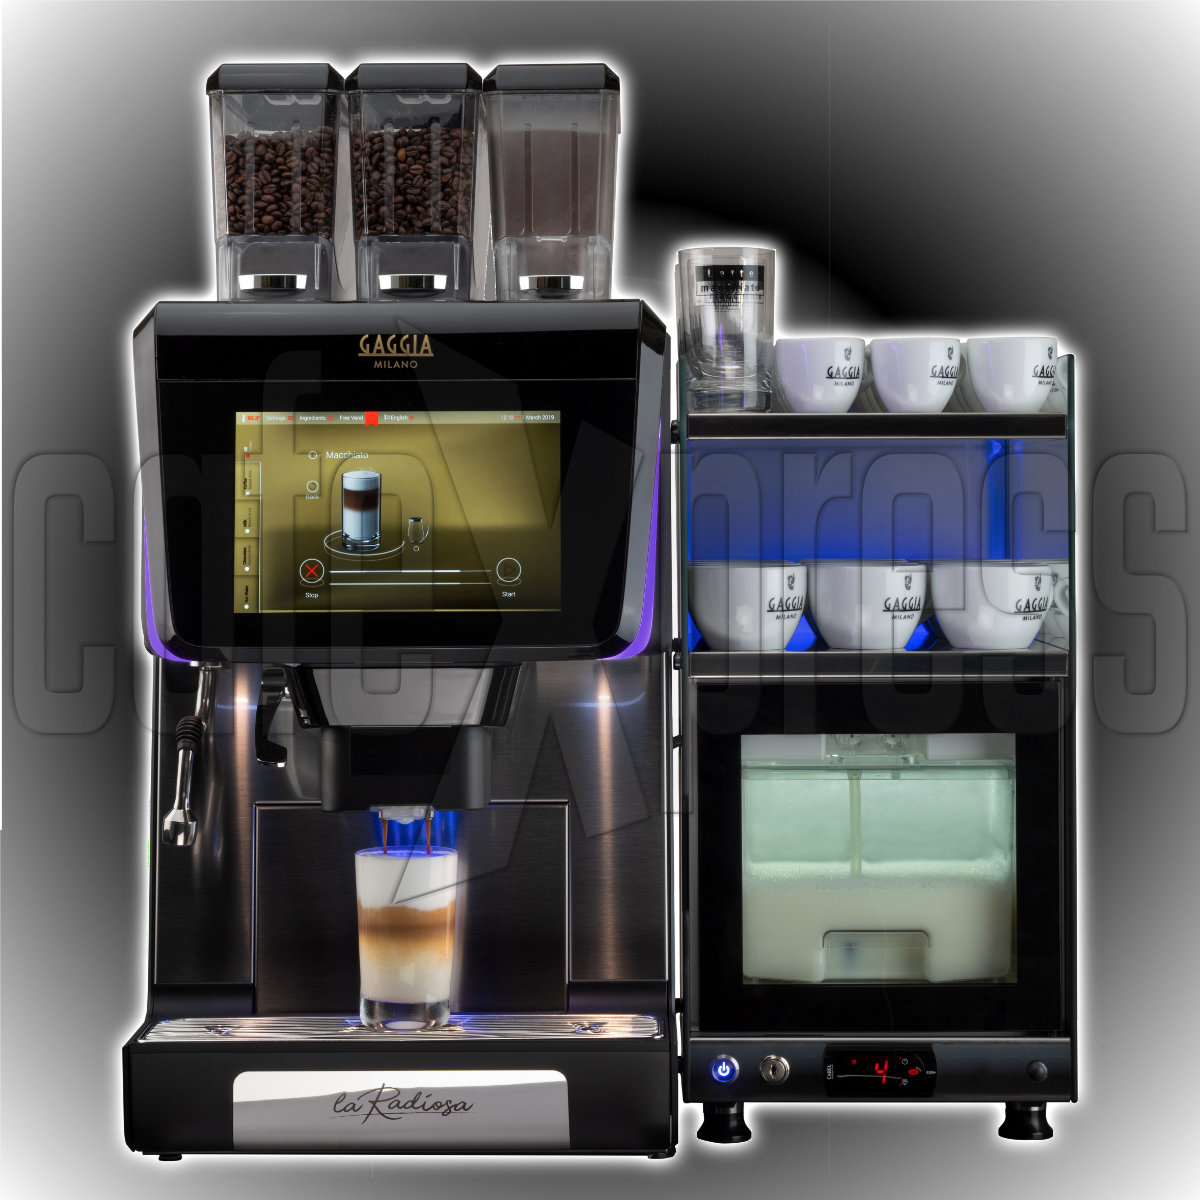 Gaggia LA RADIOSA Automatic Coffee Machine